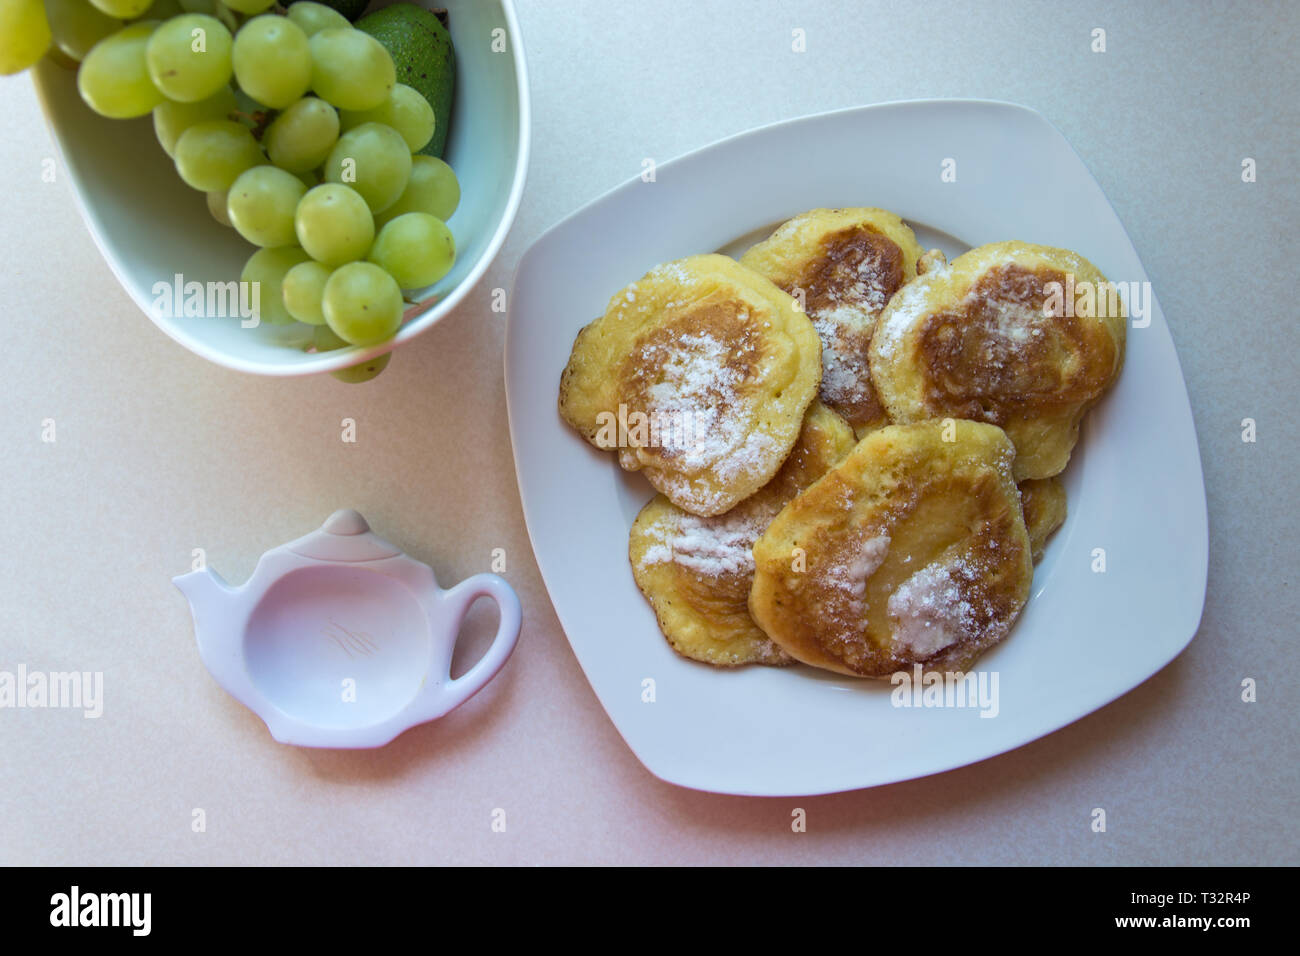 Traditionelle polnische Pfannkuchen auf einen Teller und grüne Trauben - Süße Pfannkuchen mit Puderzucker bestreut Stockfoto